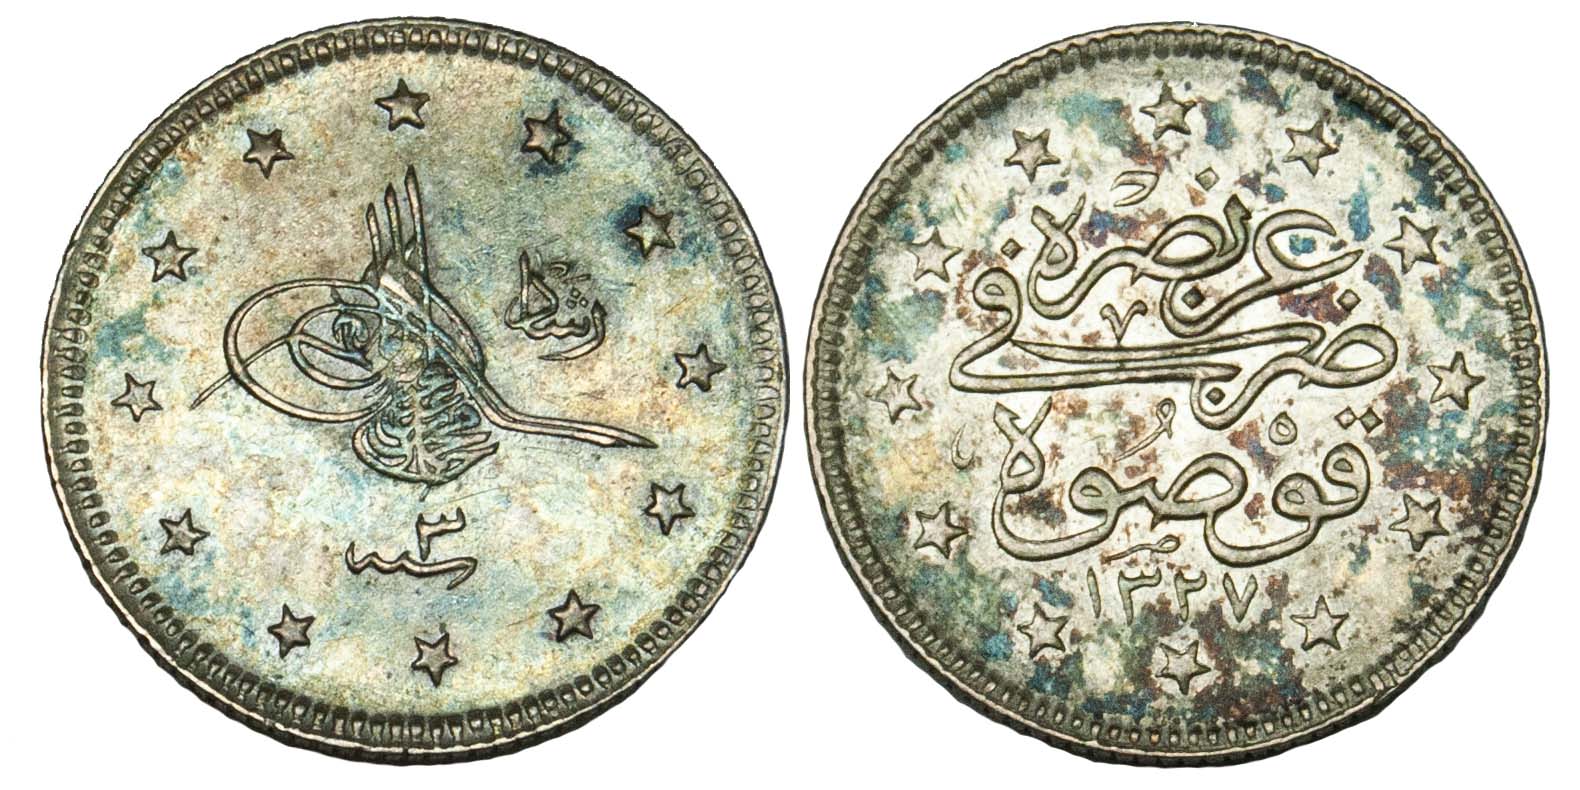 Turkey, 1911, Silver 2 Kurush